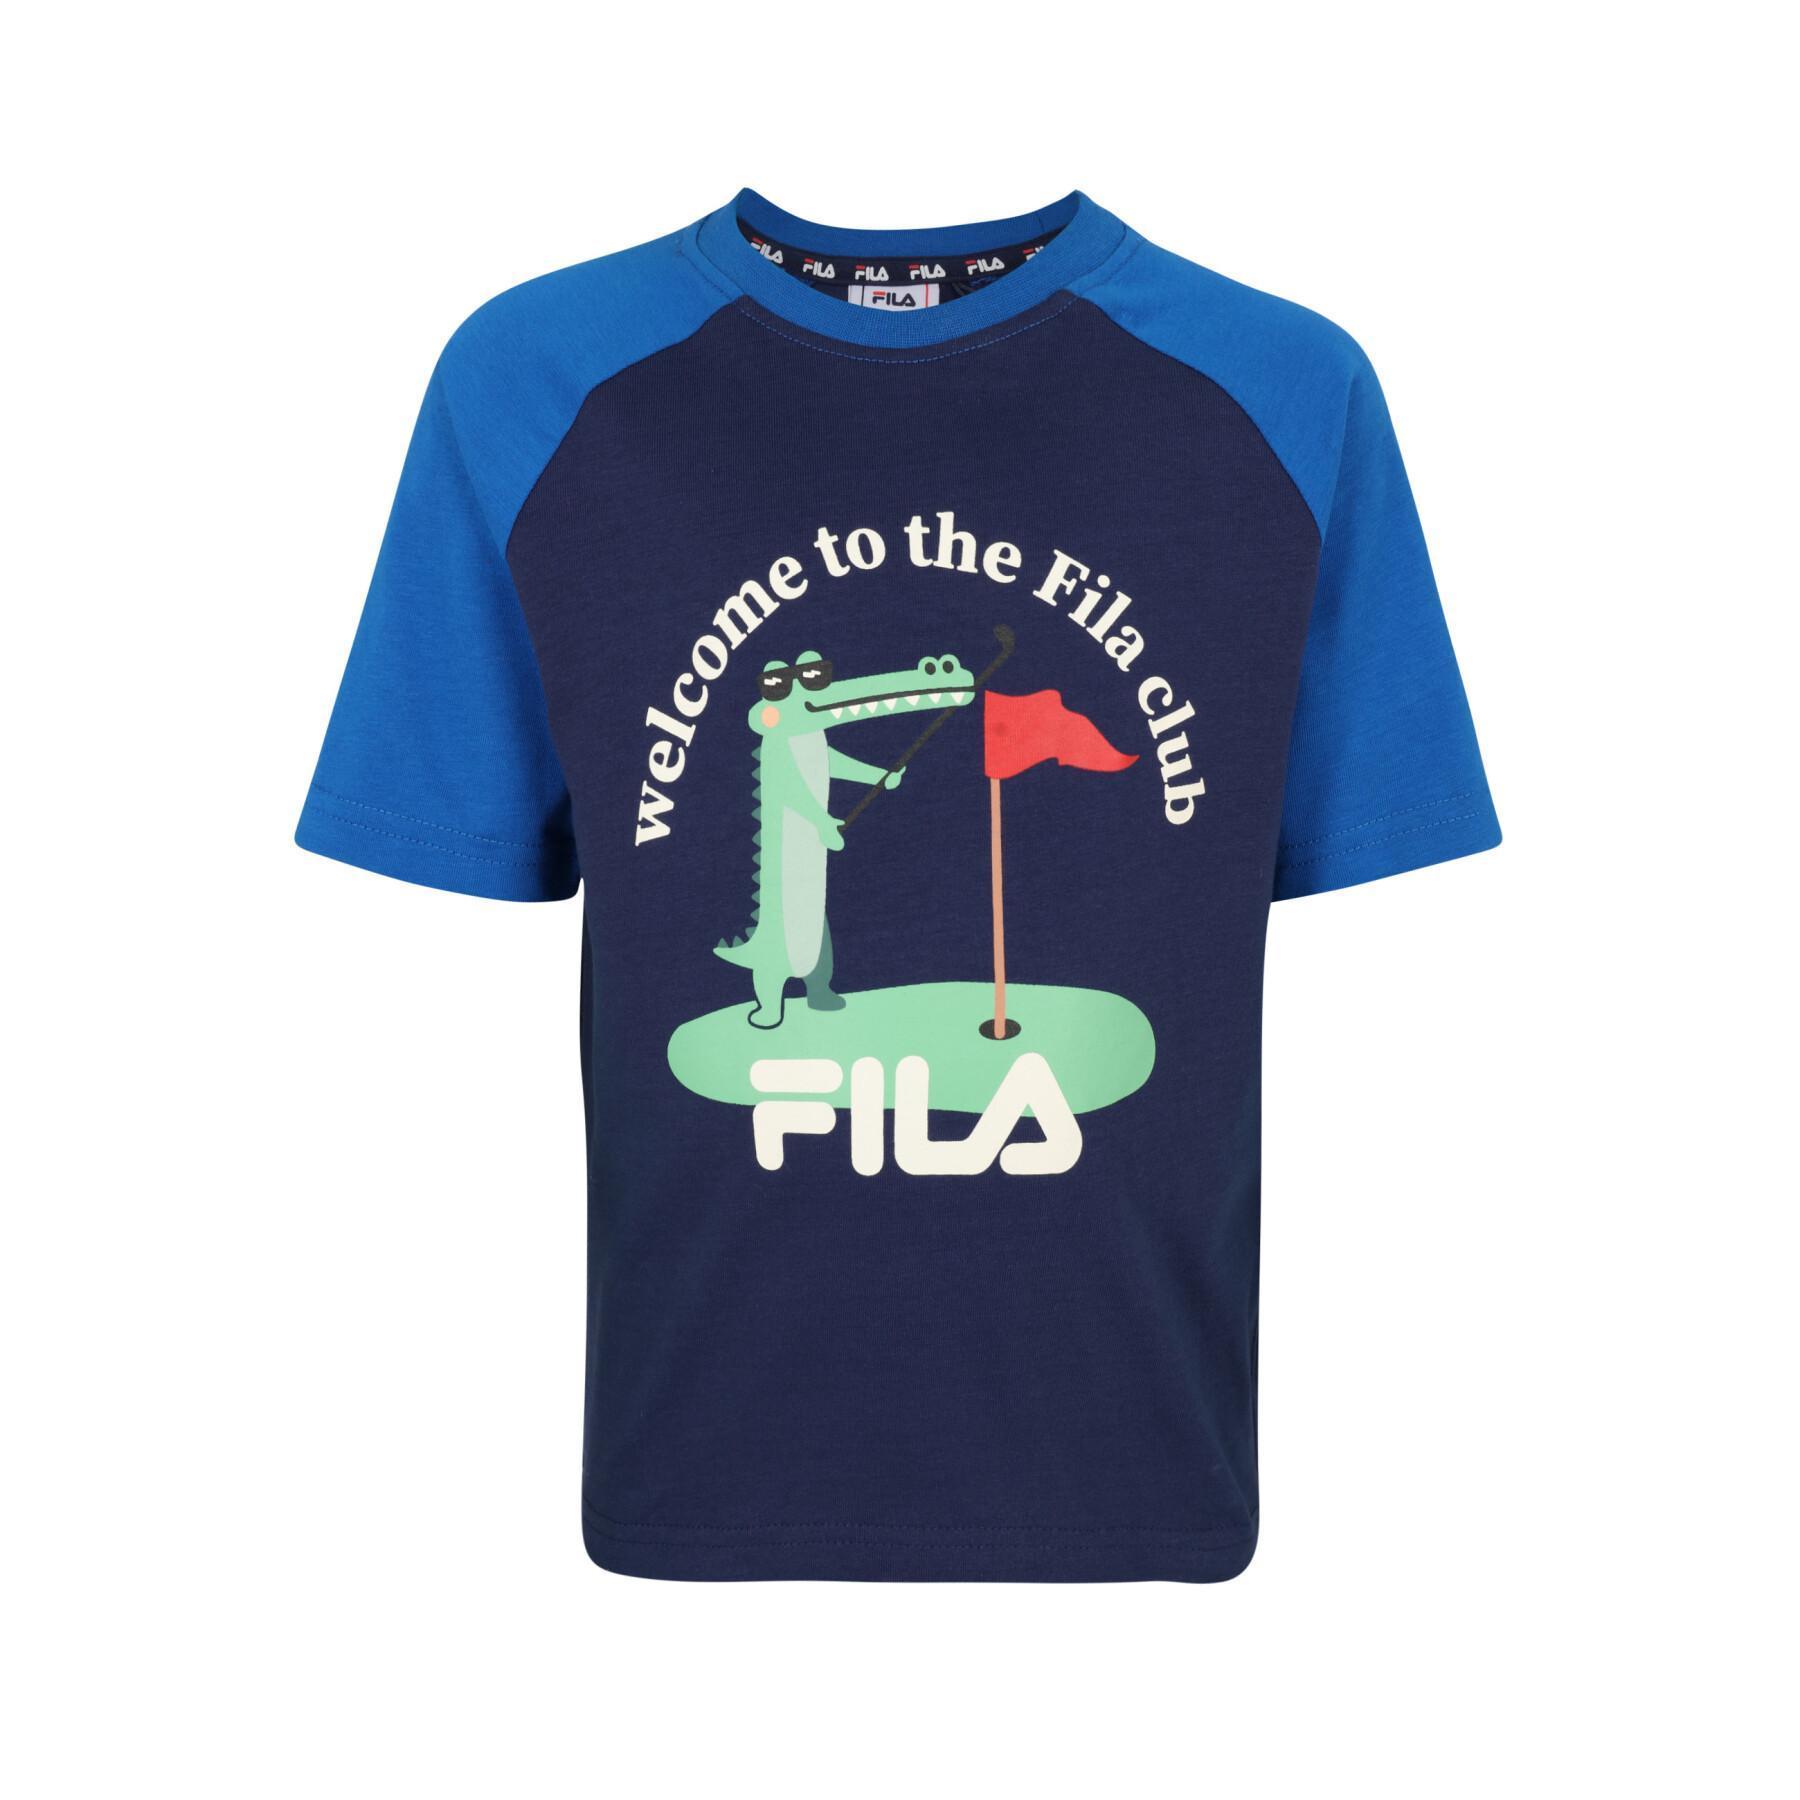 Child's T-shirt Fila Teschendorf